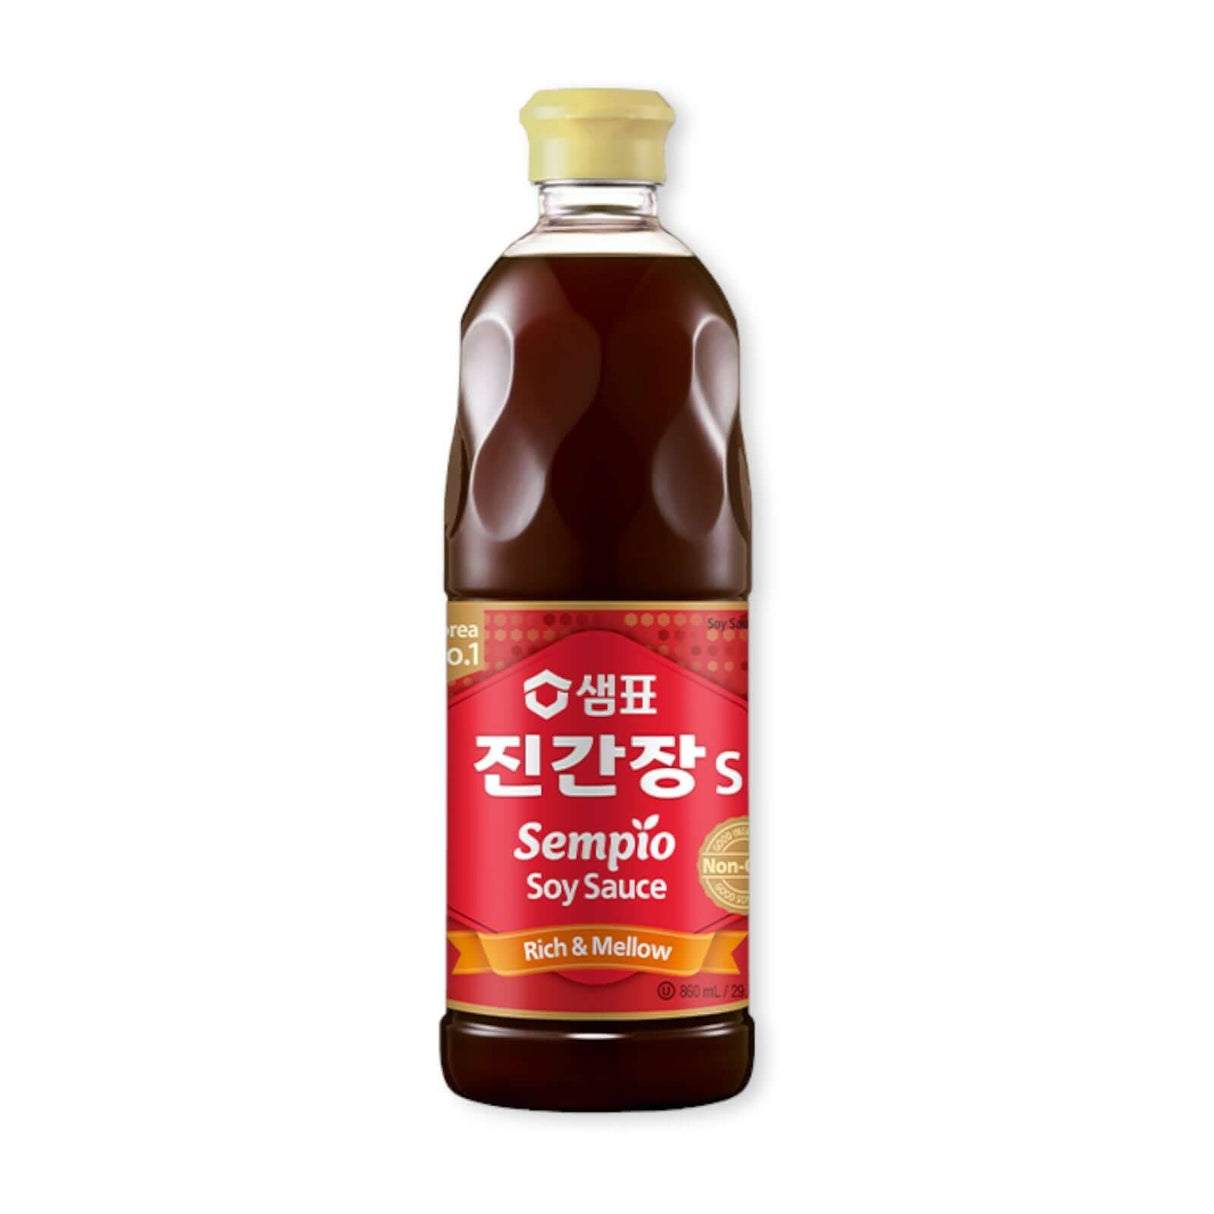 Sempio Soy Sauce Jin S (Rich & Melon)